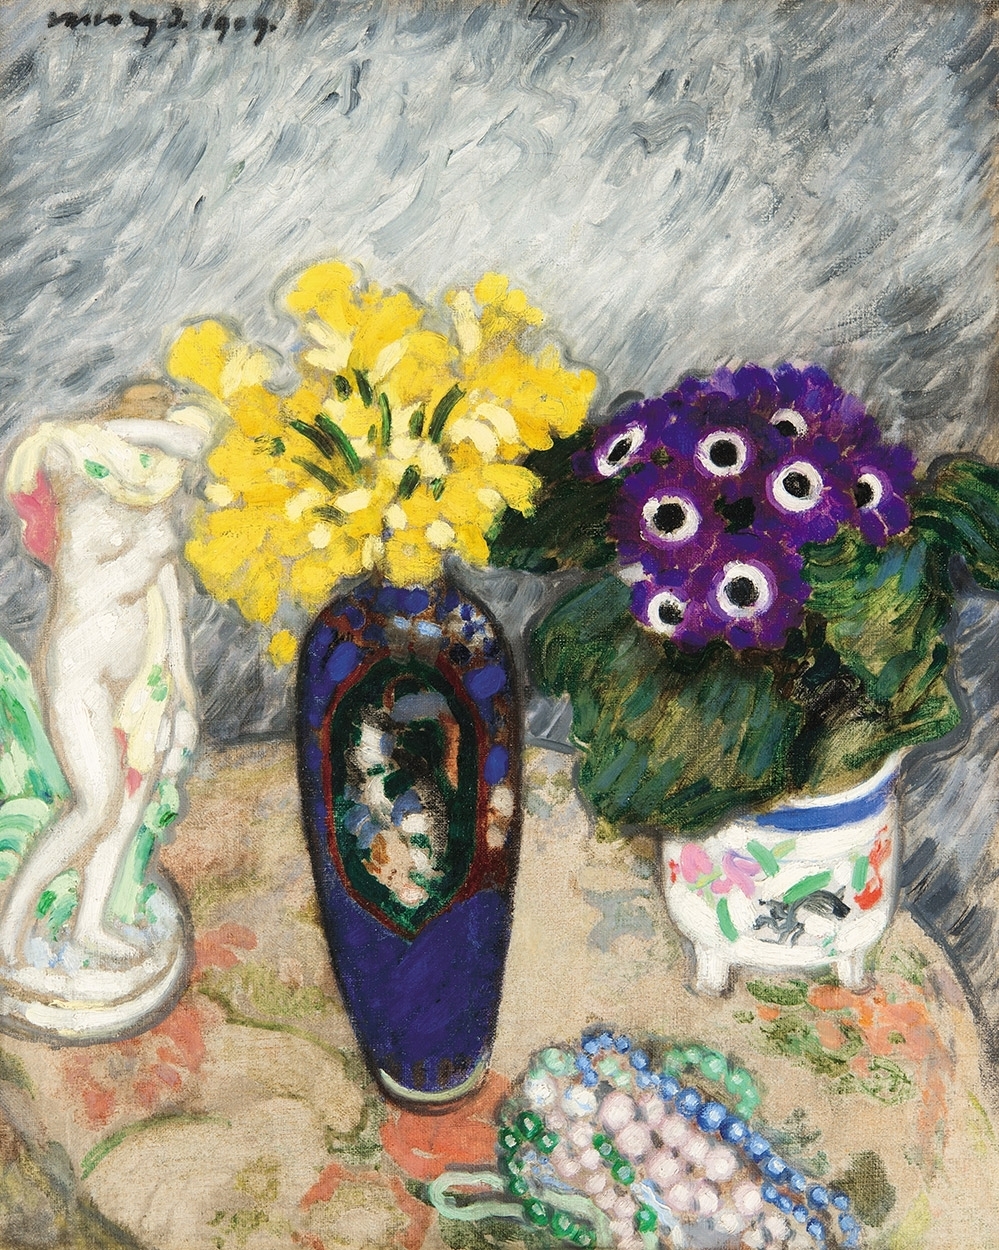 Vaszary János (1867-1939) Flowers and porcelains, 1909